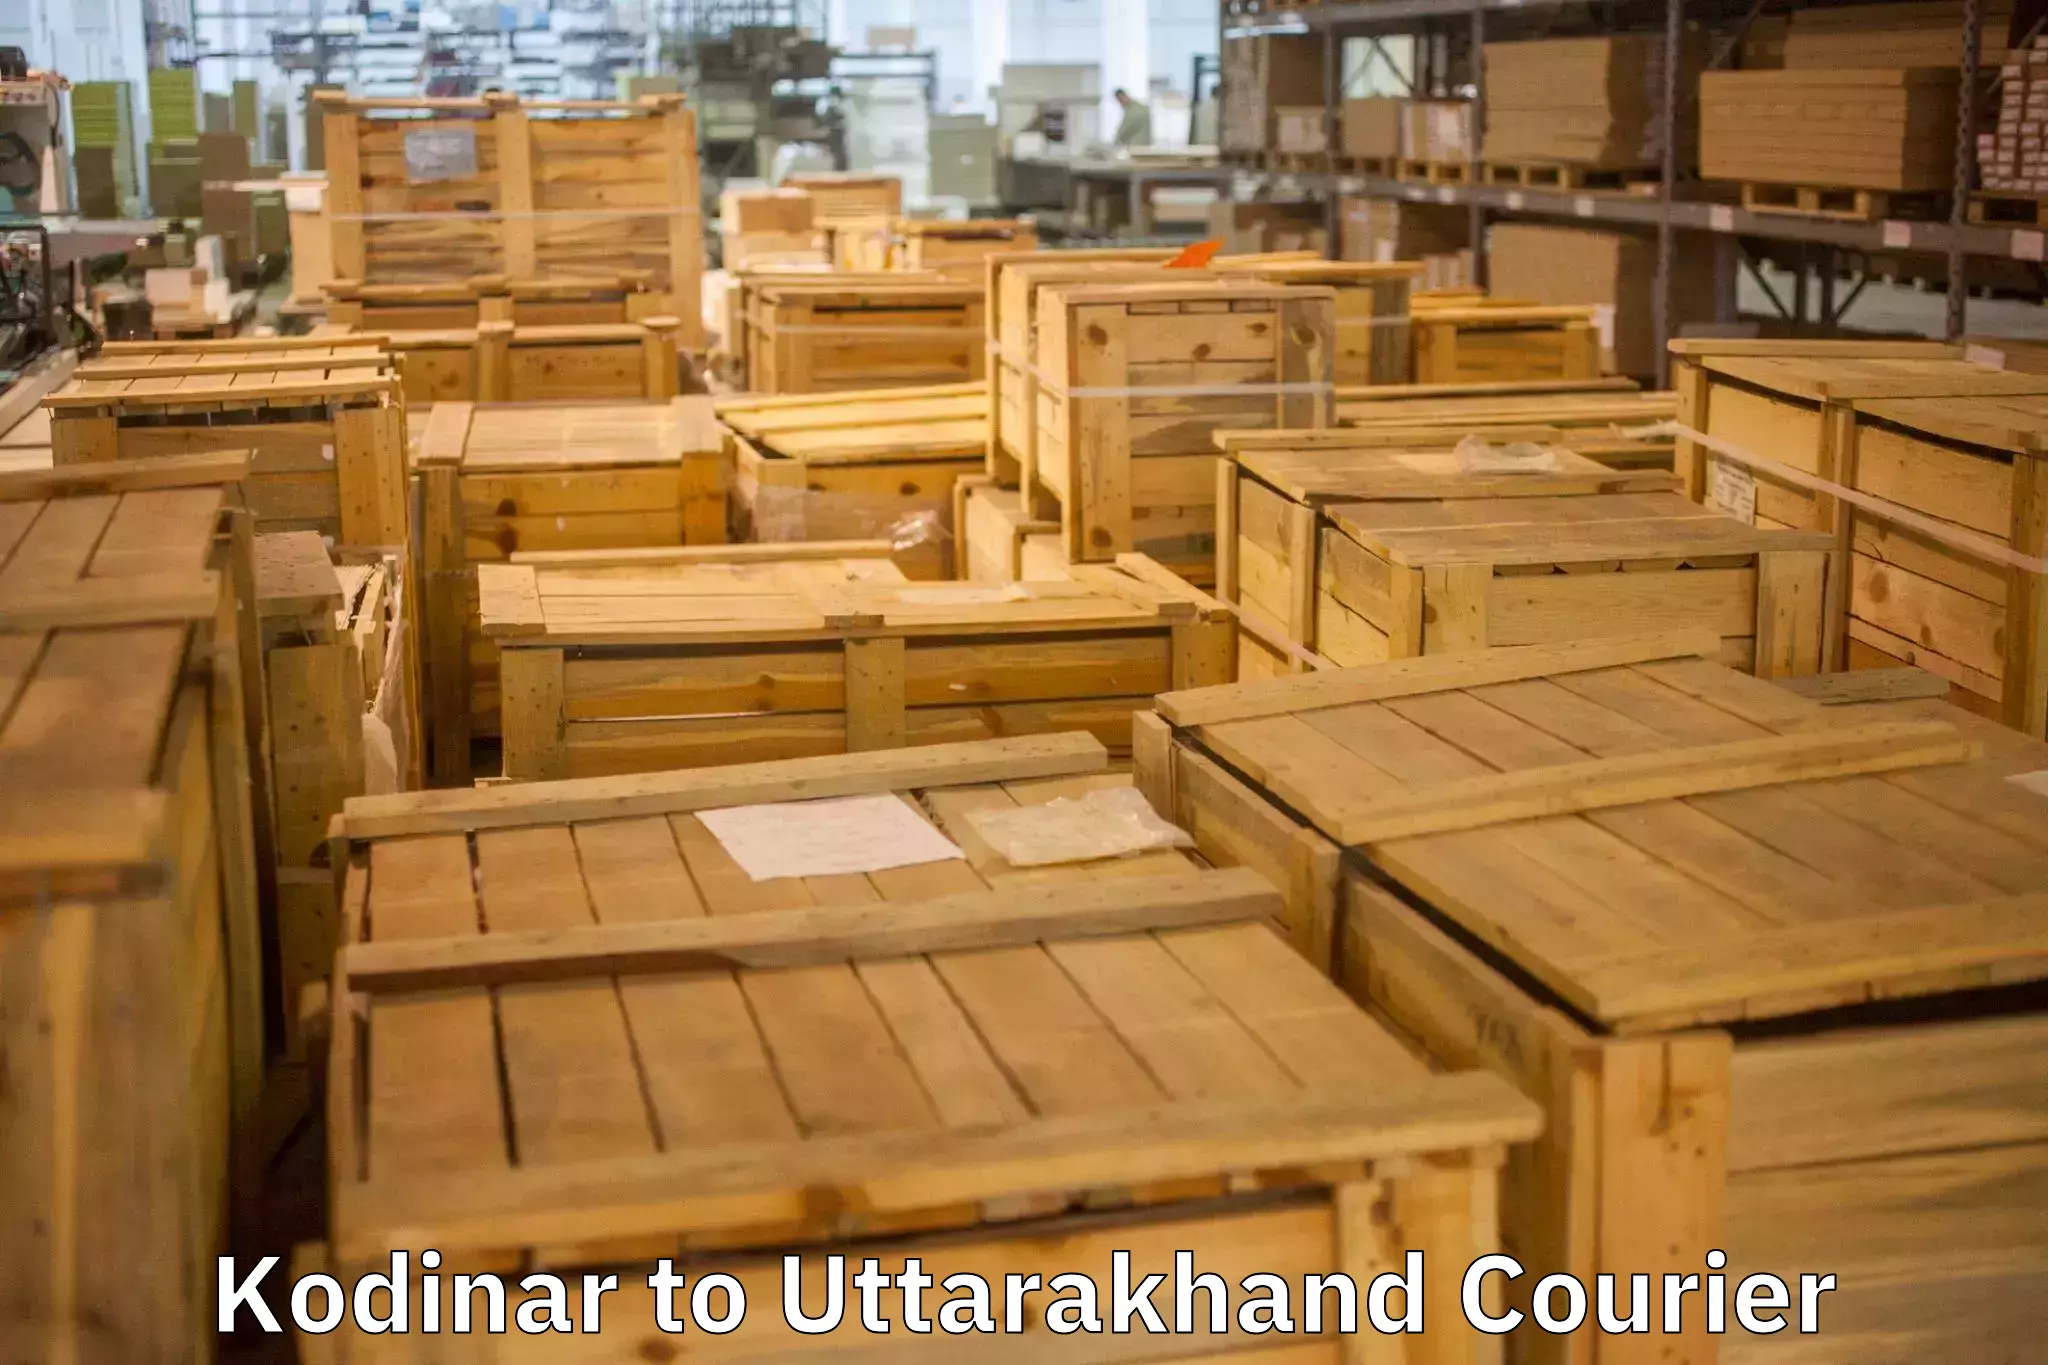 Stress-free moving Kodinar to Uttarakhand